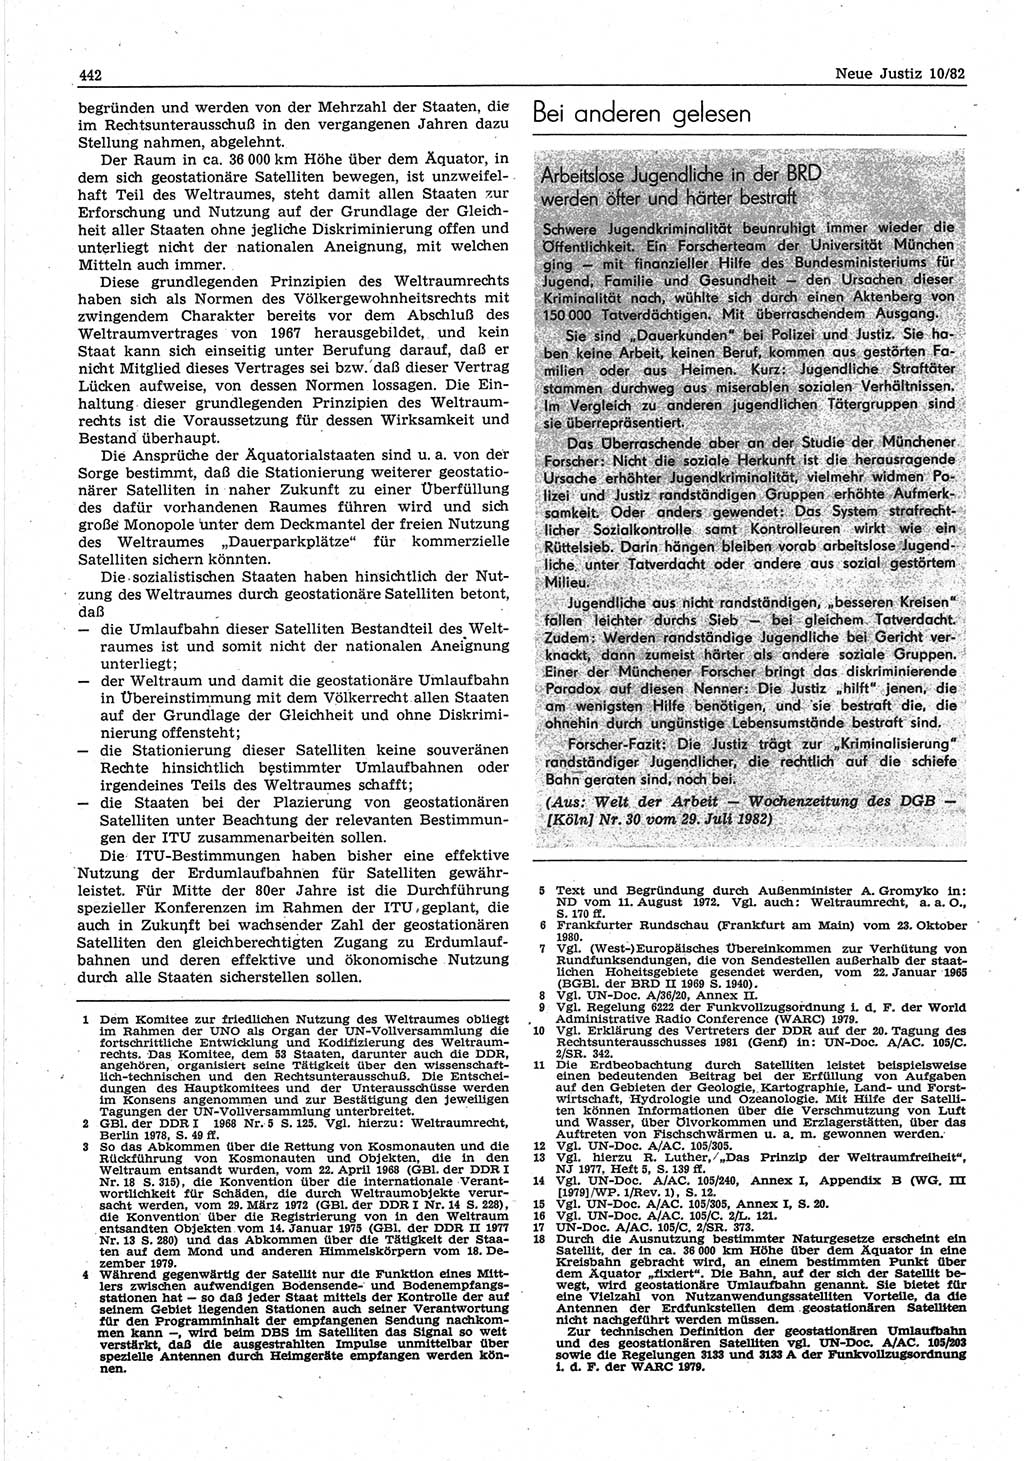 Neue Justiz (NJ), Zeitschrift für sozialistisches Recht und Gesetzlichkeit [Deutsche Demokratische Republik (DDR)], 36. Jahrgang 1982, Seite 442 (NJ DDR 1982, S. 442)